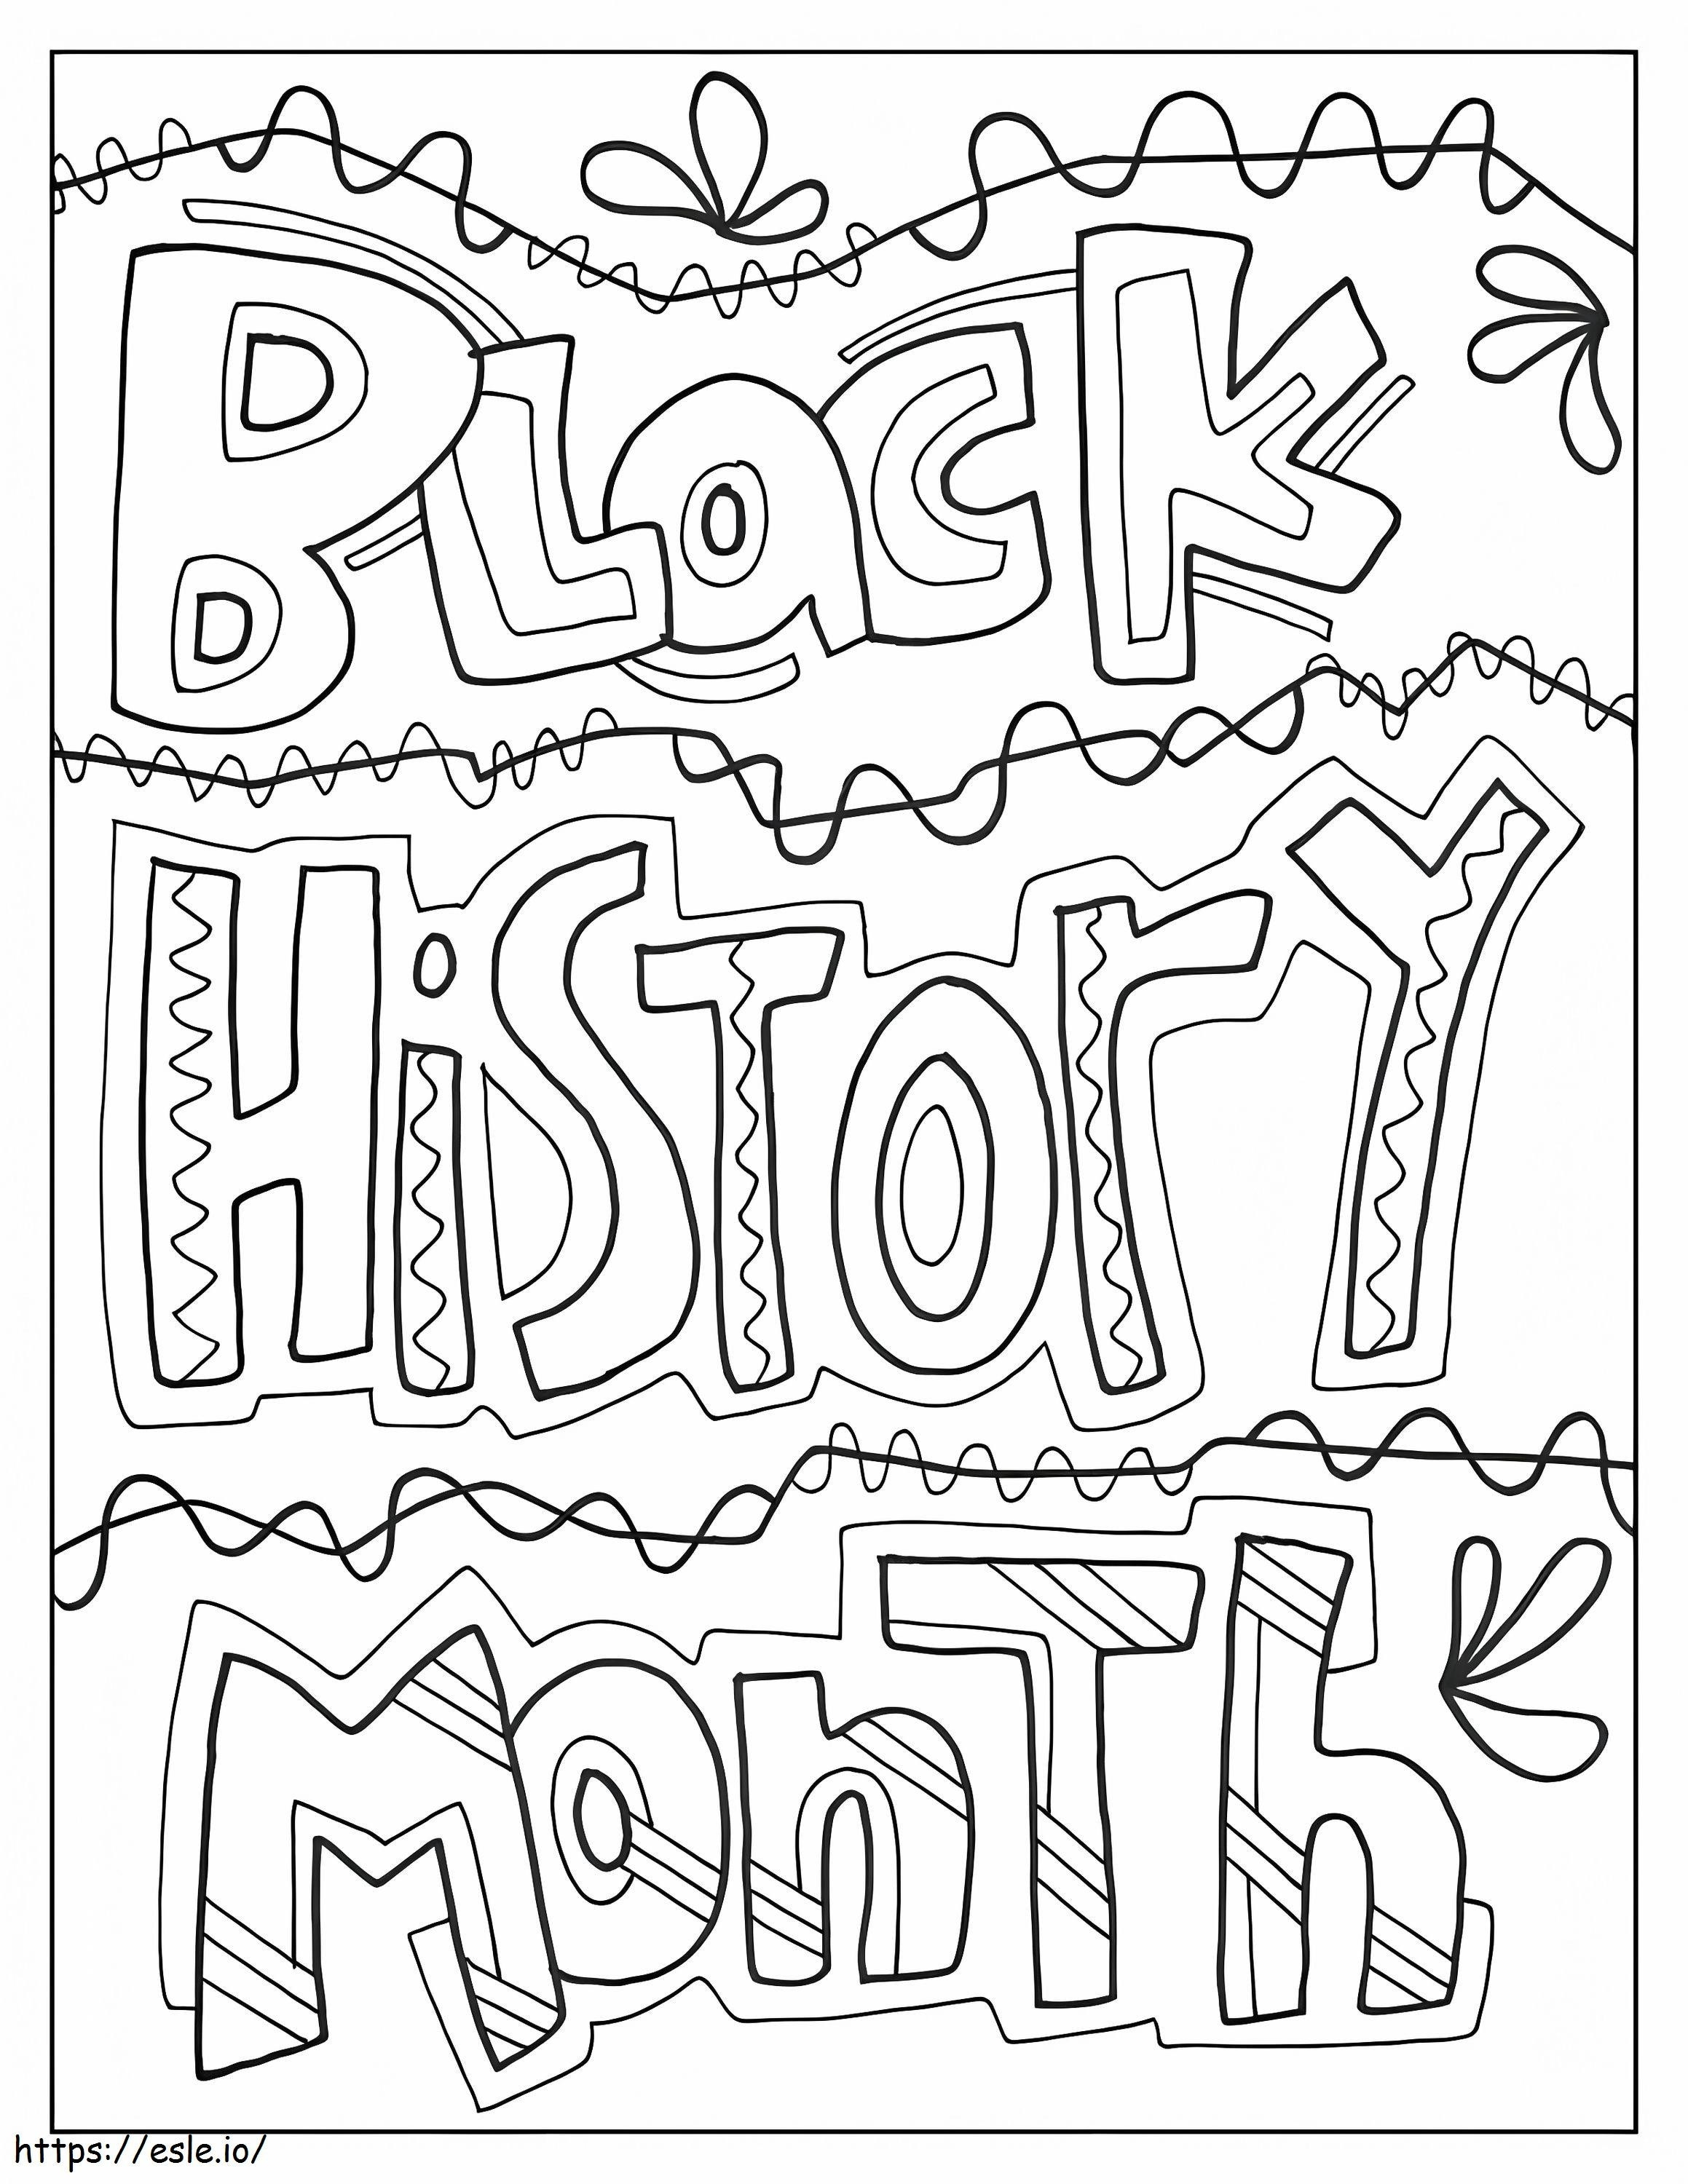 Mese della storia nera da colorare